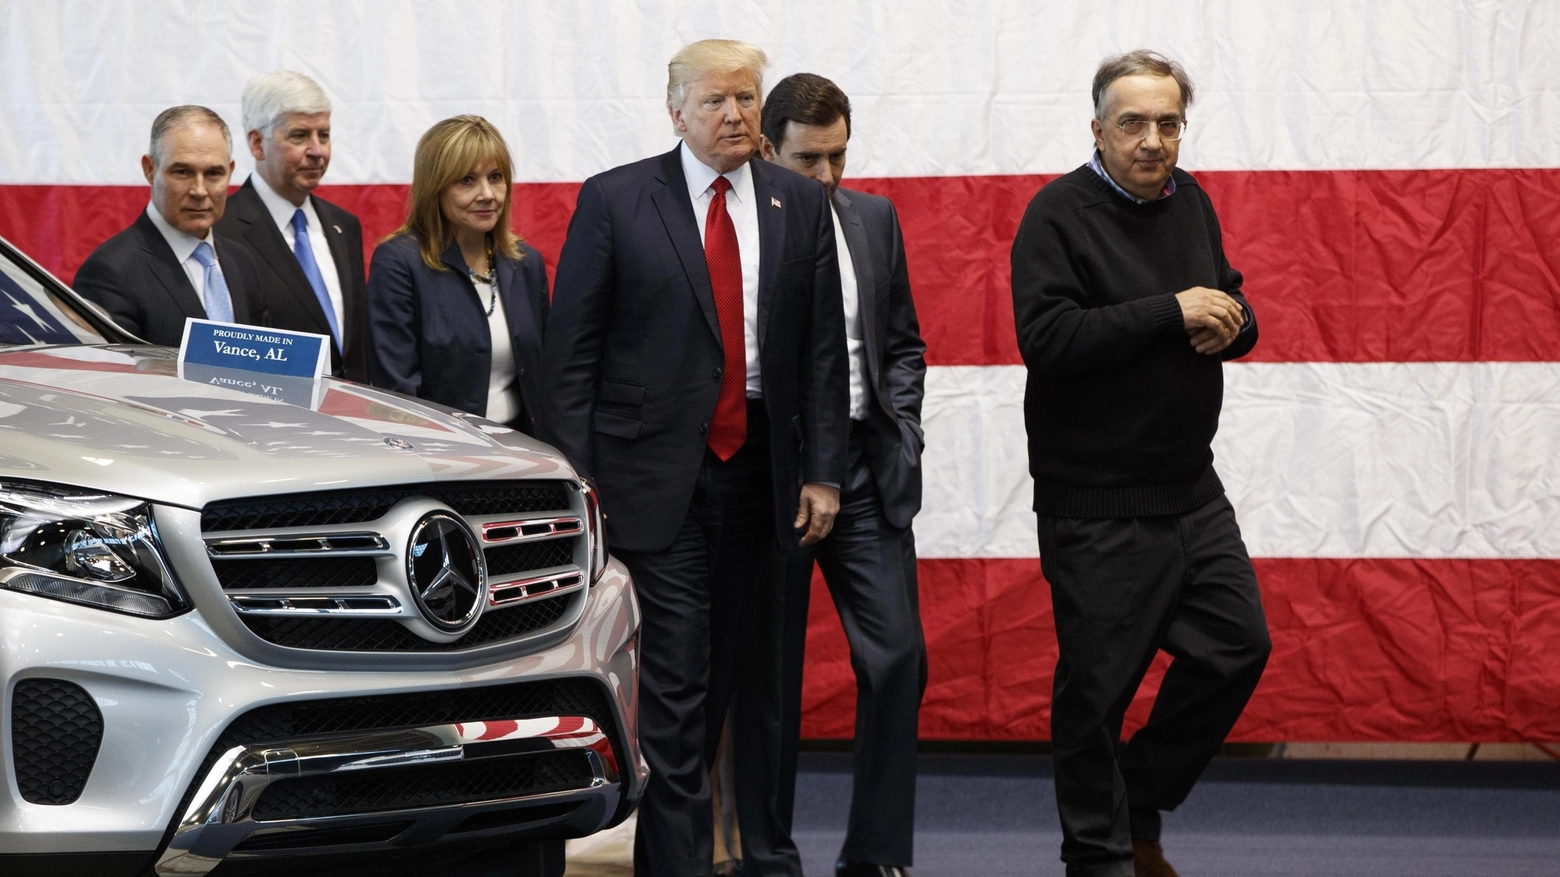  Donald Trump incontra i manager delle auto